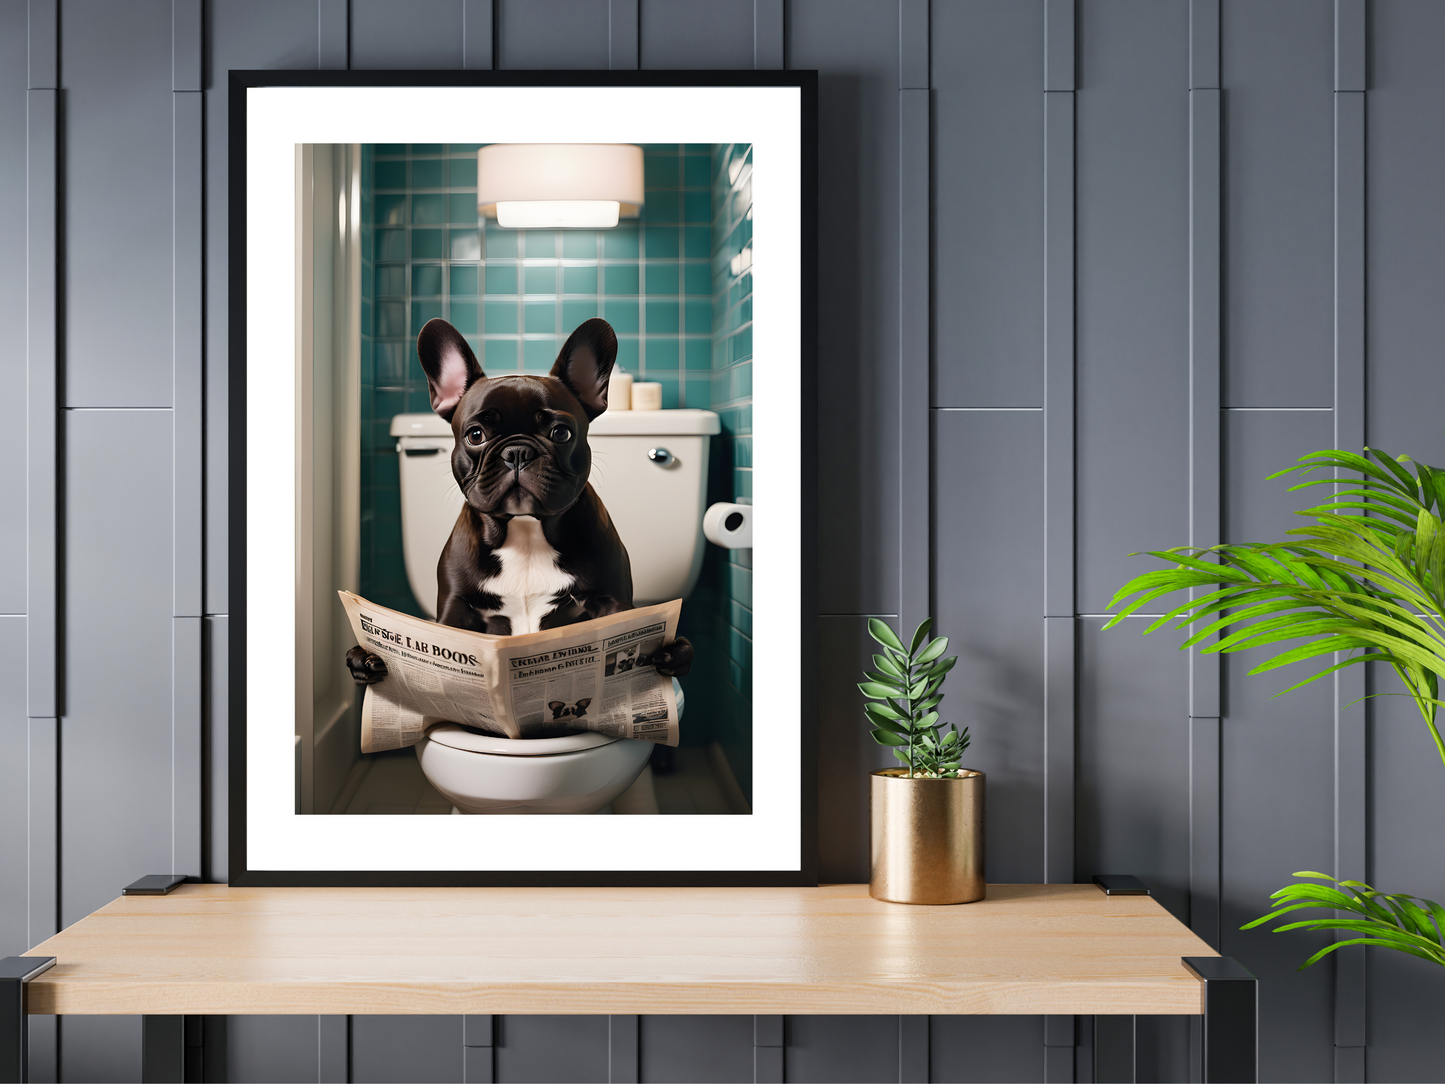 French Bulldog on Toilet